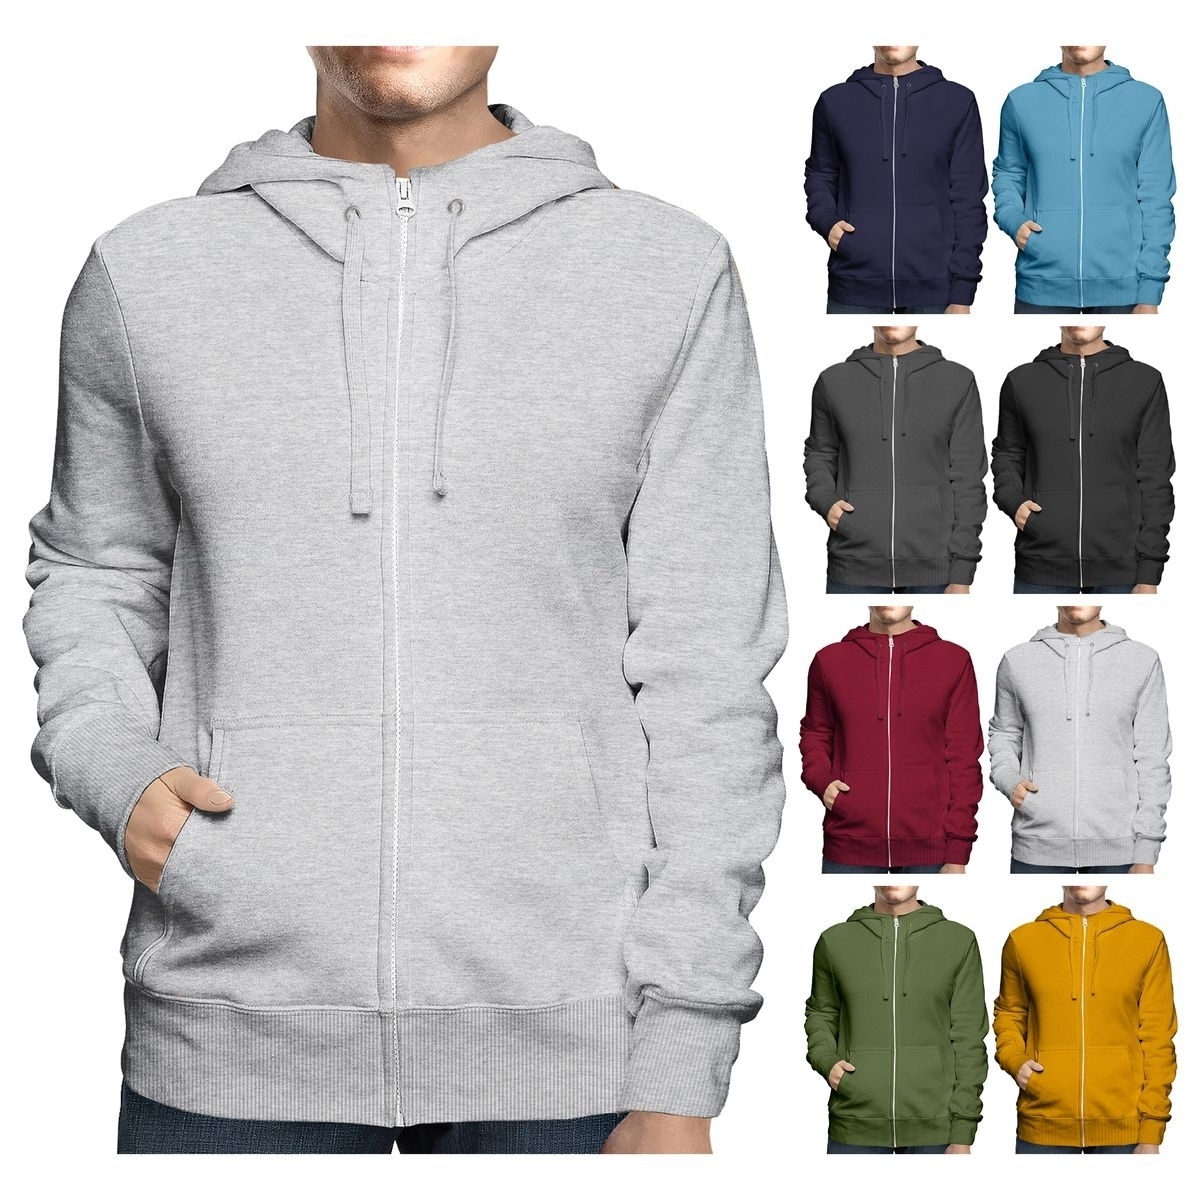 Men's Big & Tall Winter Warm Soft Cozy Full Zip-Up Fleece Lined Hoodie Sweatshirt - Navy, Medium